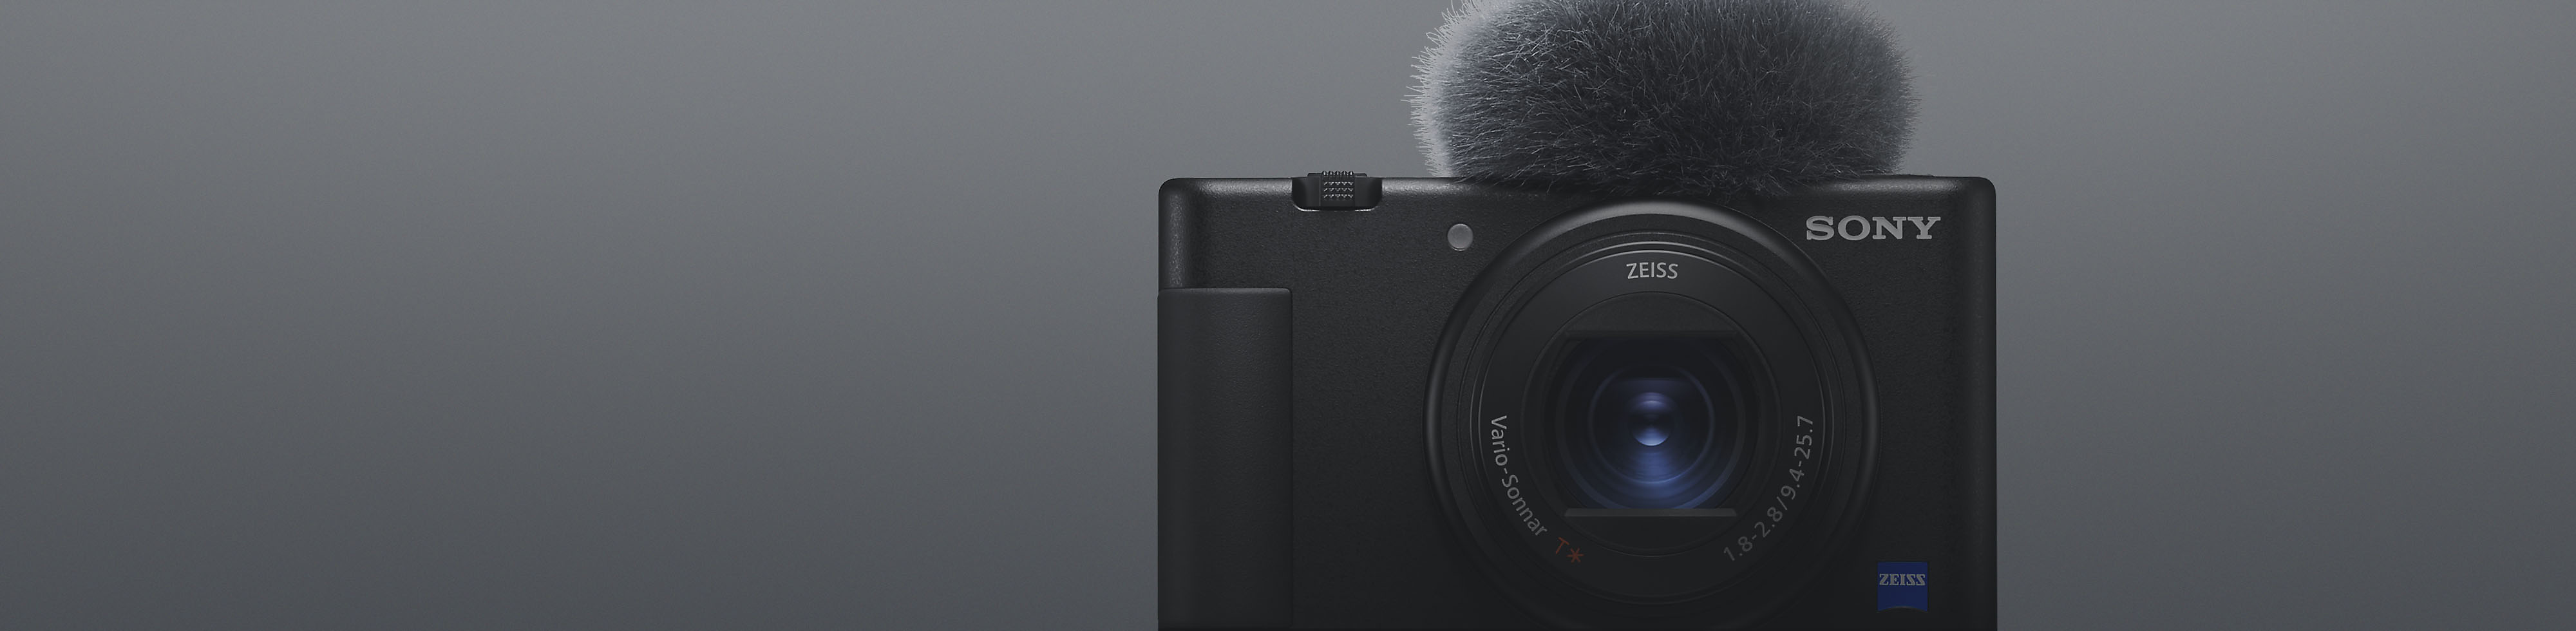 منظر أمامي لكاميرا سوني صغيرة الحجم باللون الأسود مع ميكروفون متصل